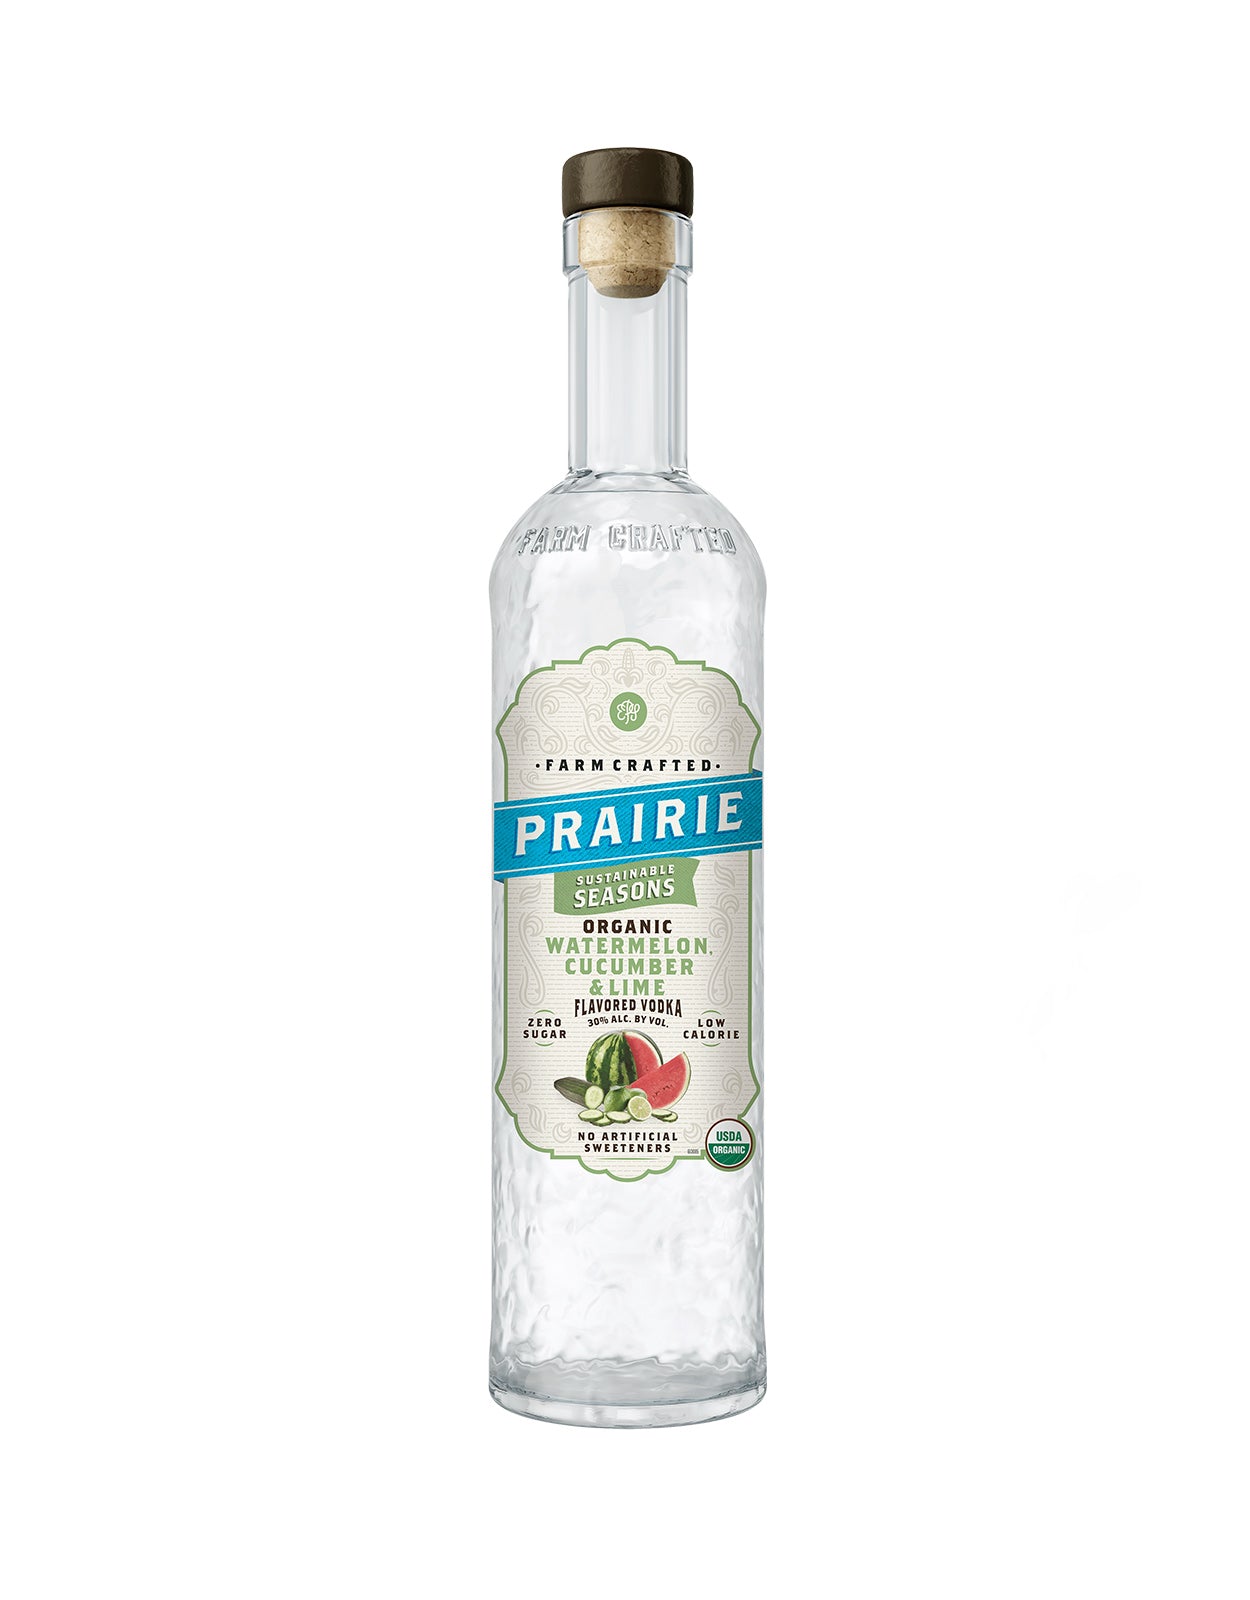 Prairie Organic Watermelon Cucumber & Lime Flavored Vodka